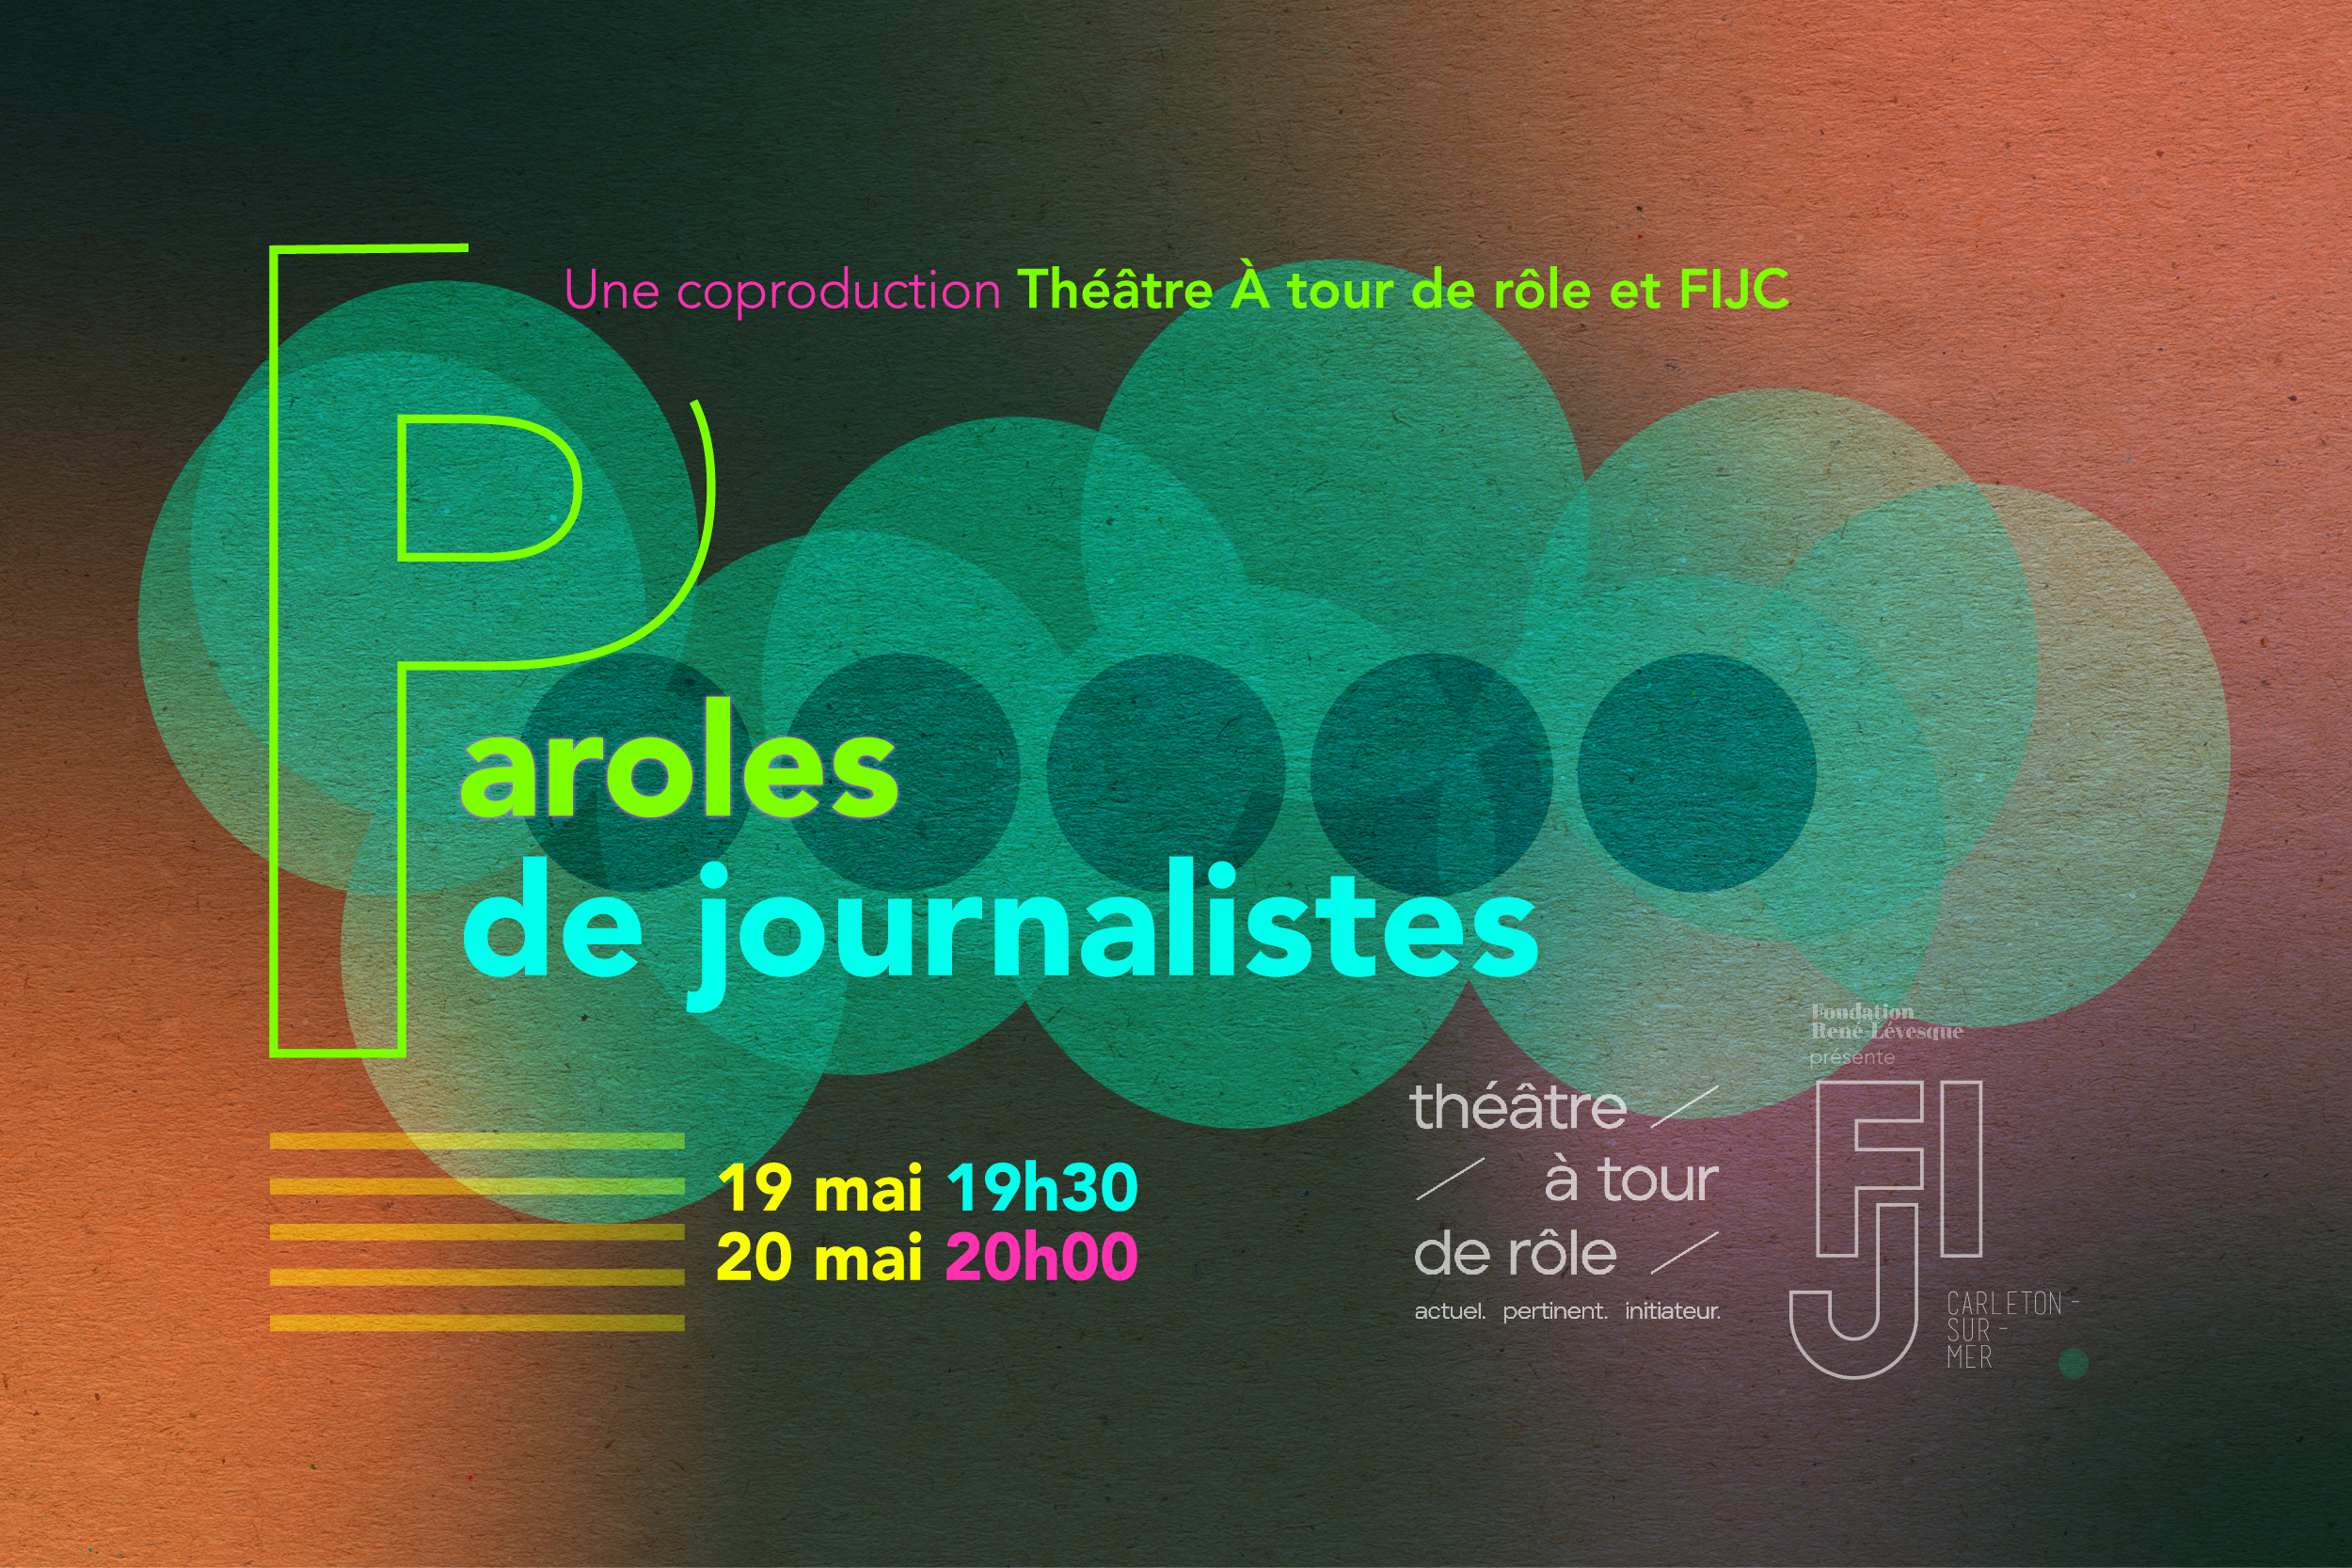 Paroles de journalistes - FIJC - Festival international du journalisme